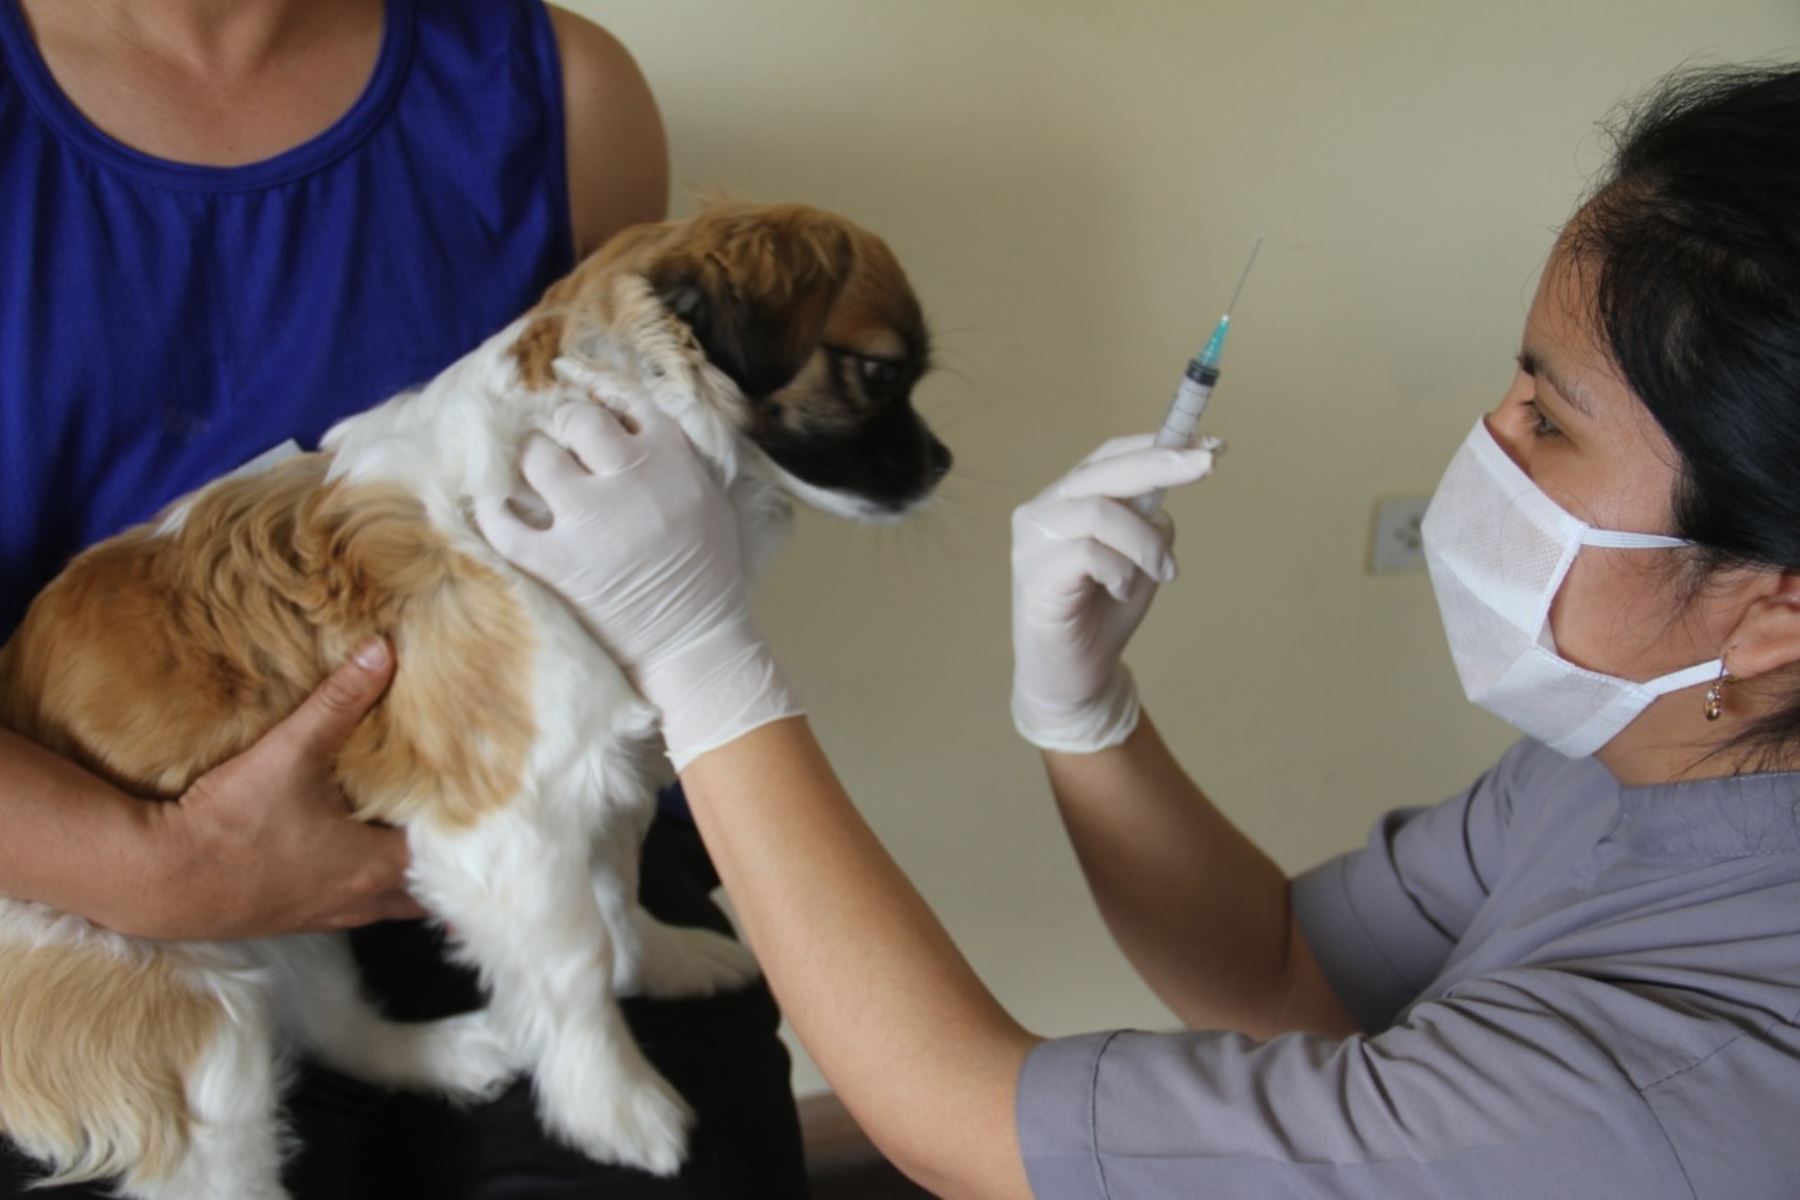 Con el objetivo de inmunizar a toda la población canina del distrito de Characato, en Arequipa mañana domingo 24 de abril se realizará una jornada de vacunación antirrábica canina, a fin de prevenir la propagación del virus entre las mascotas de la zona. ANDINA/Difusión